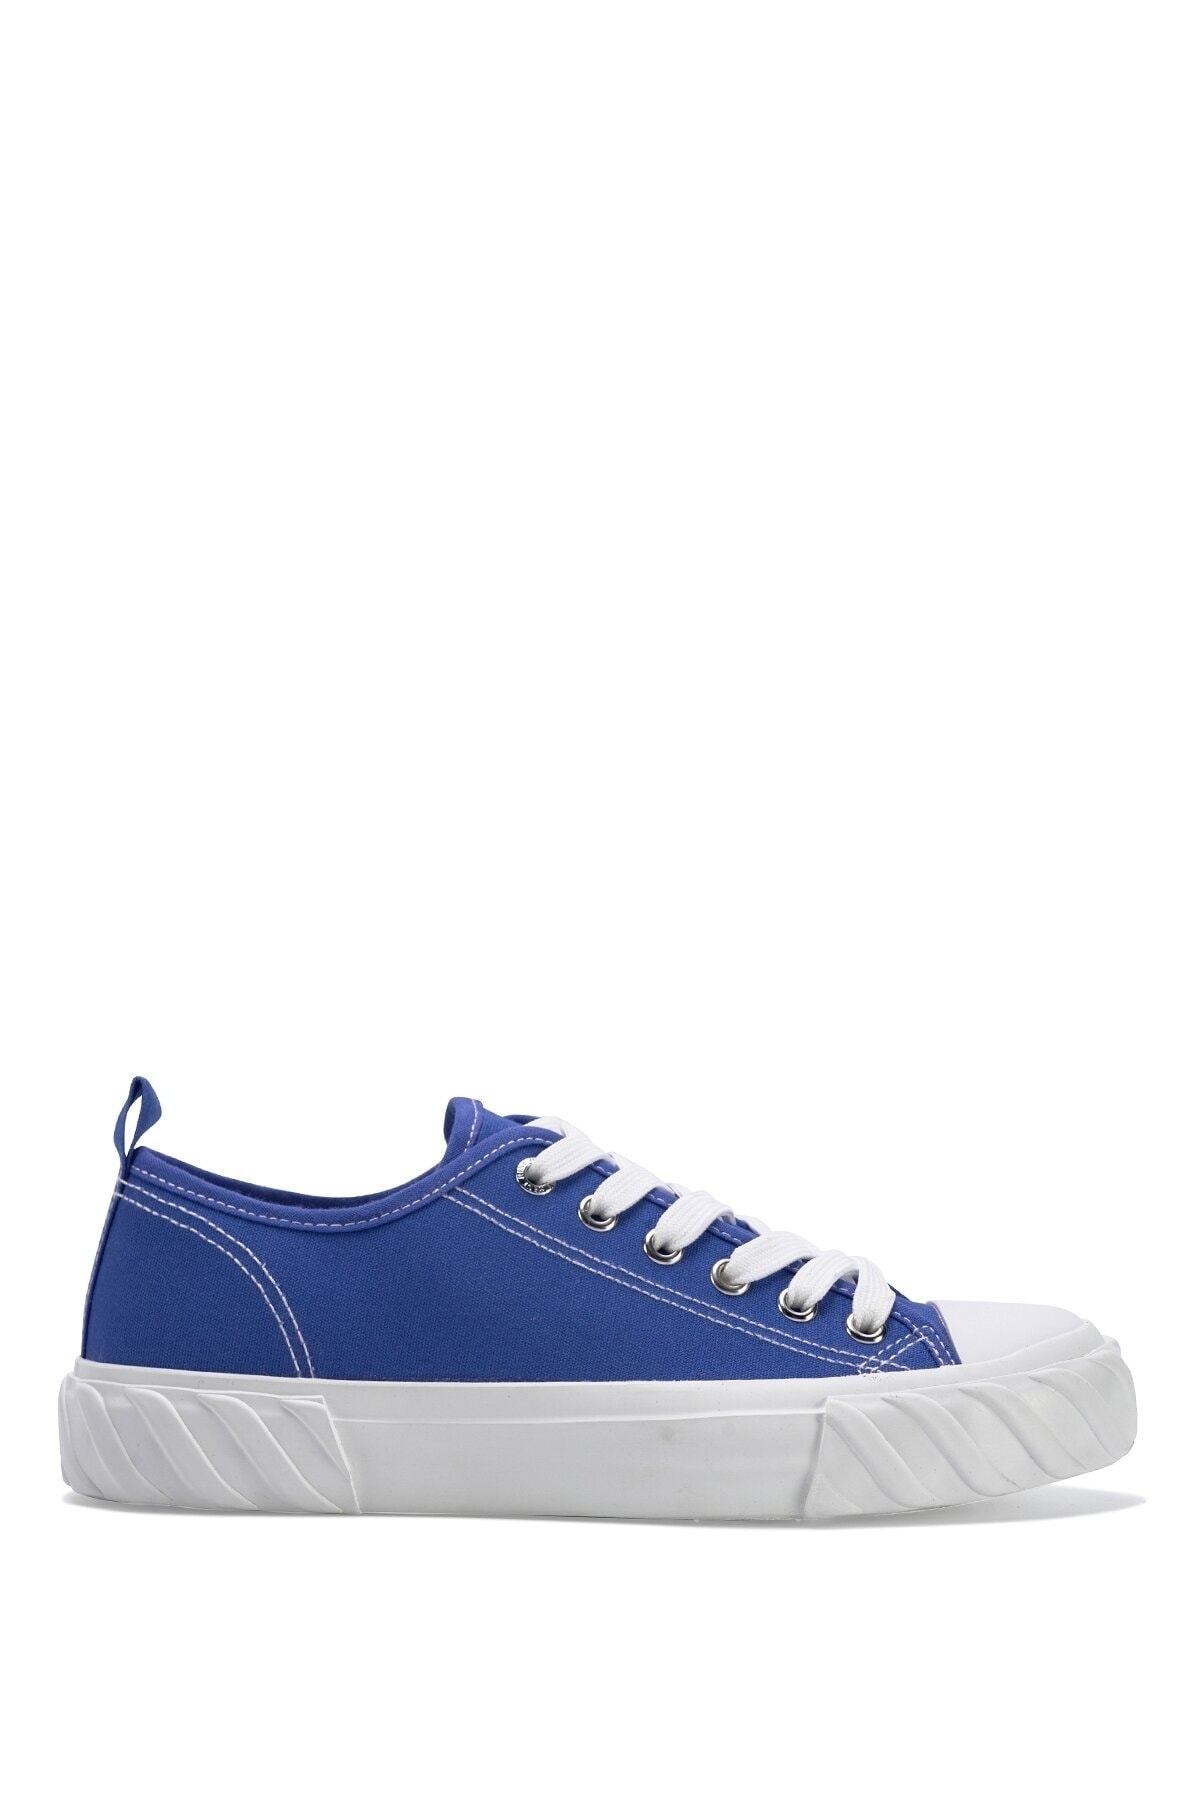 Nine West Meyra 3fx Blue Women's Sneaker